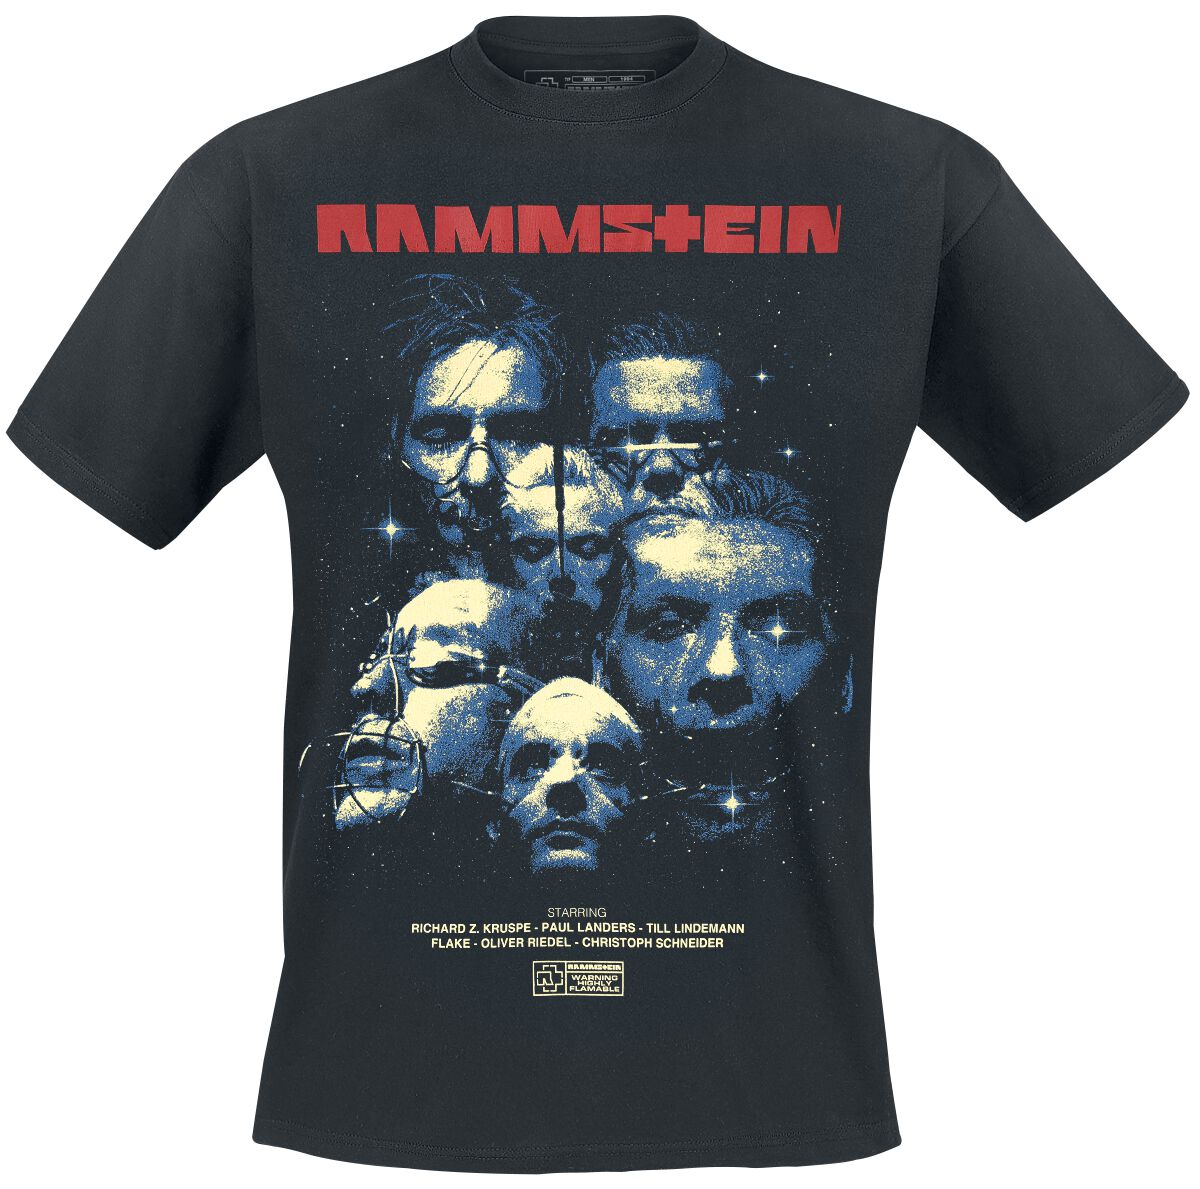 Rammstein T-Shirt - Sehnsucht Movie - XXL bis 3XL - für Männer - Größe 3XL - schwarz  - Lizenziertes Merchandise!